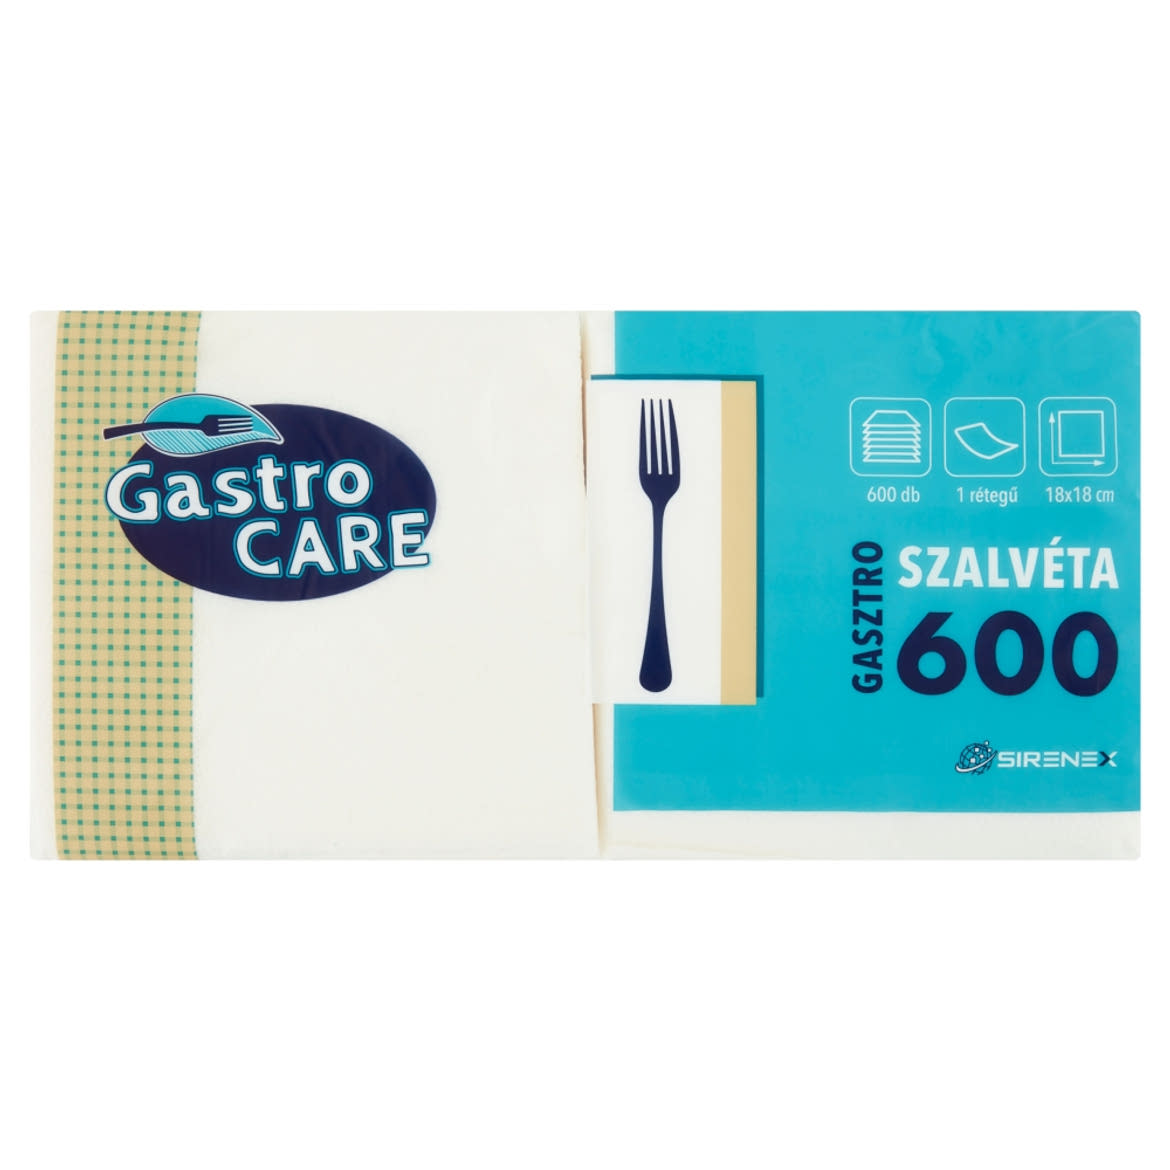 Gastro Care gasztro szalvéta 1 rétegű 18 x 18 cm